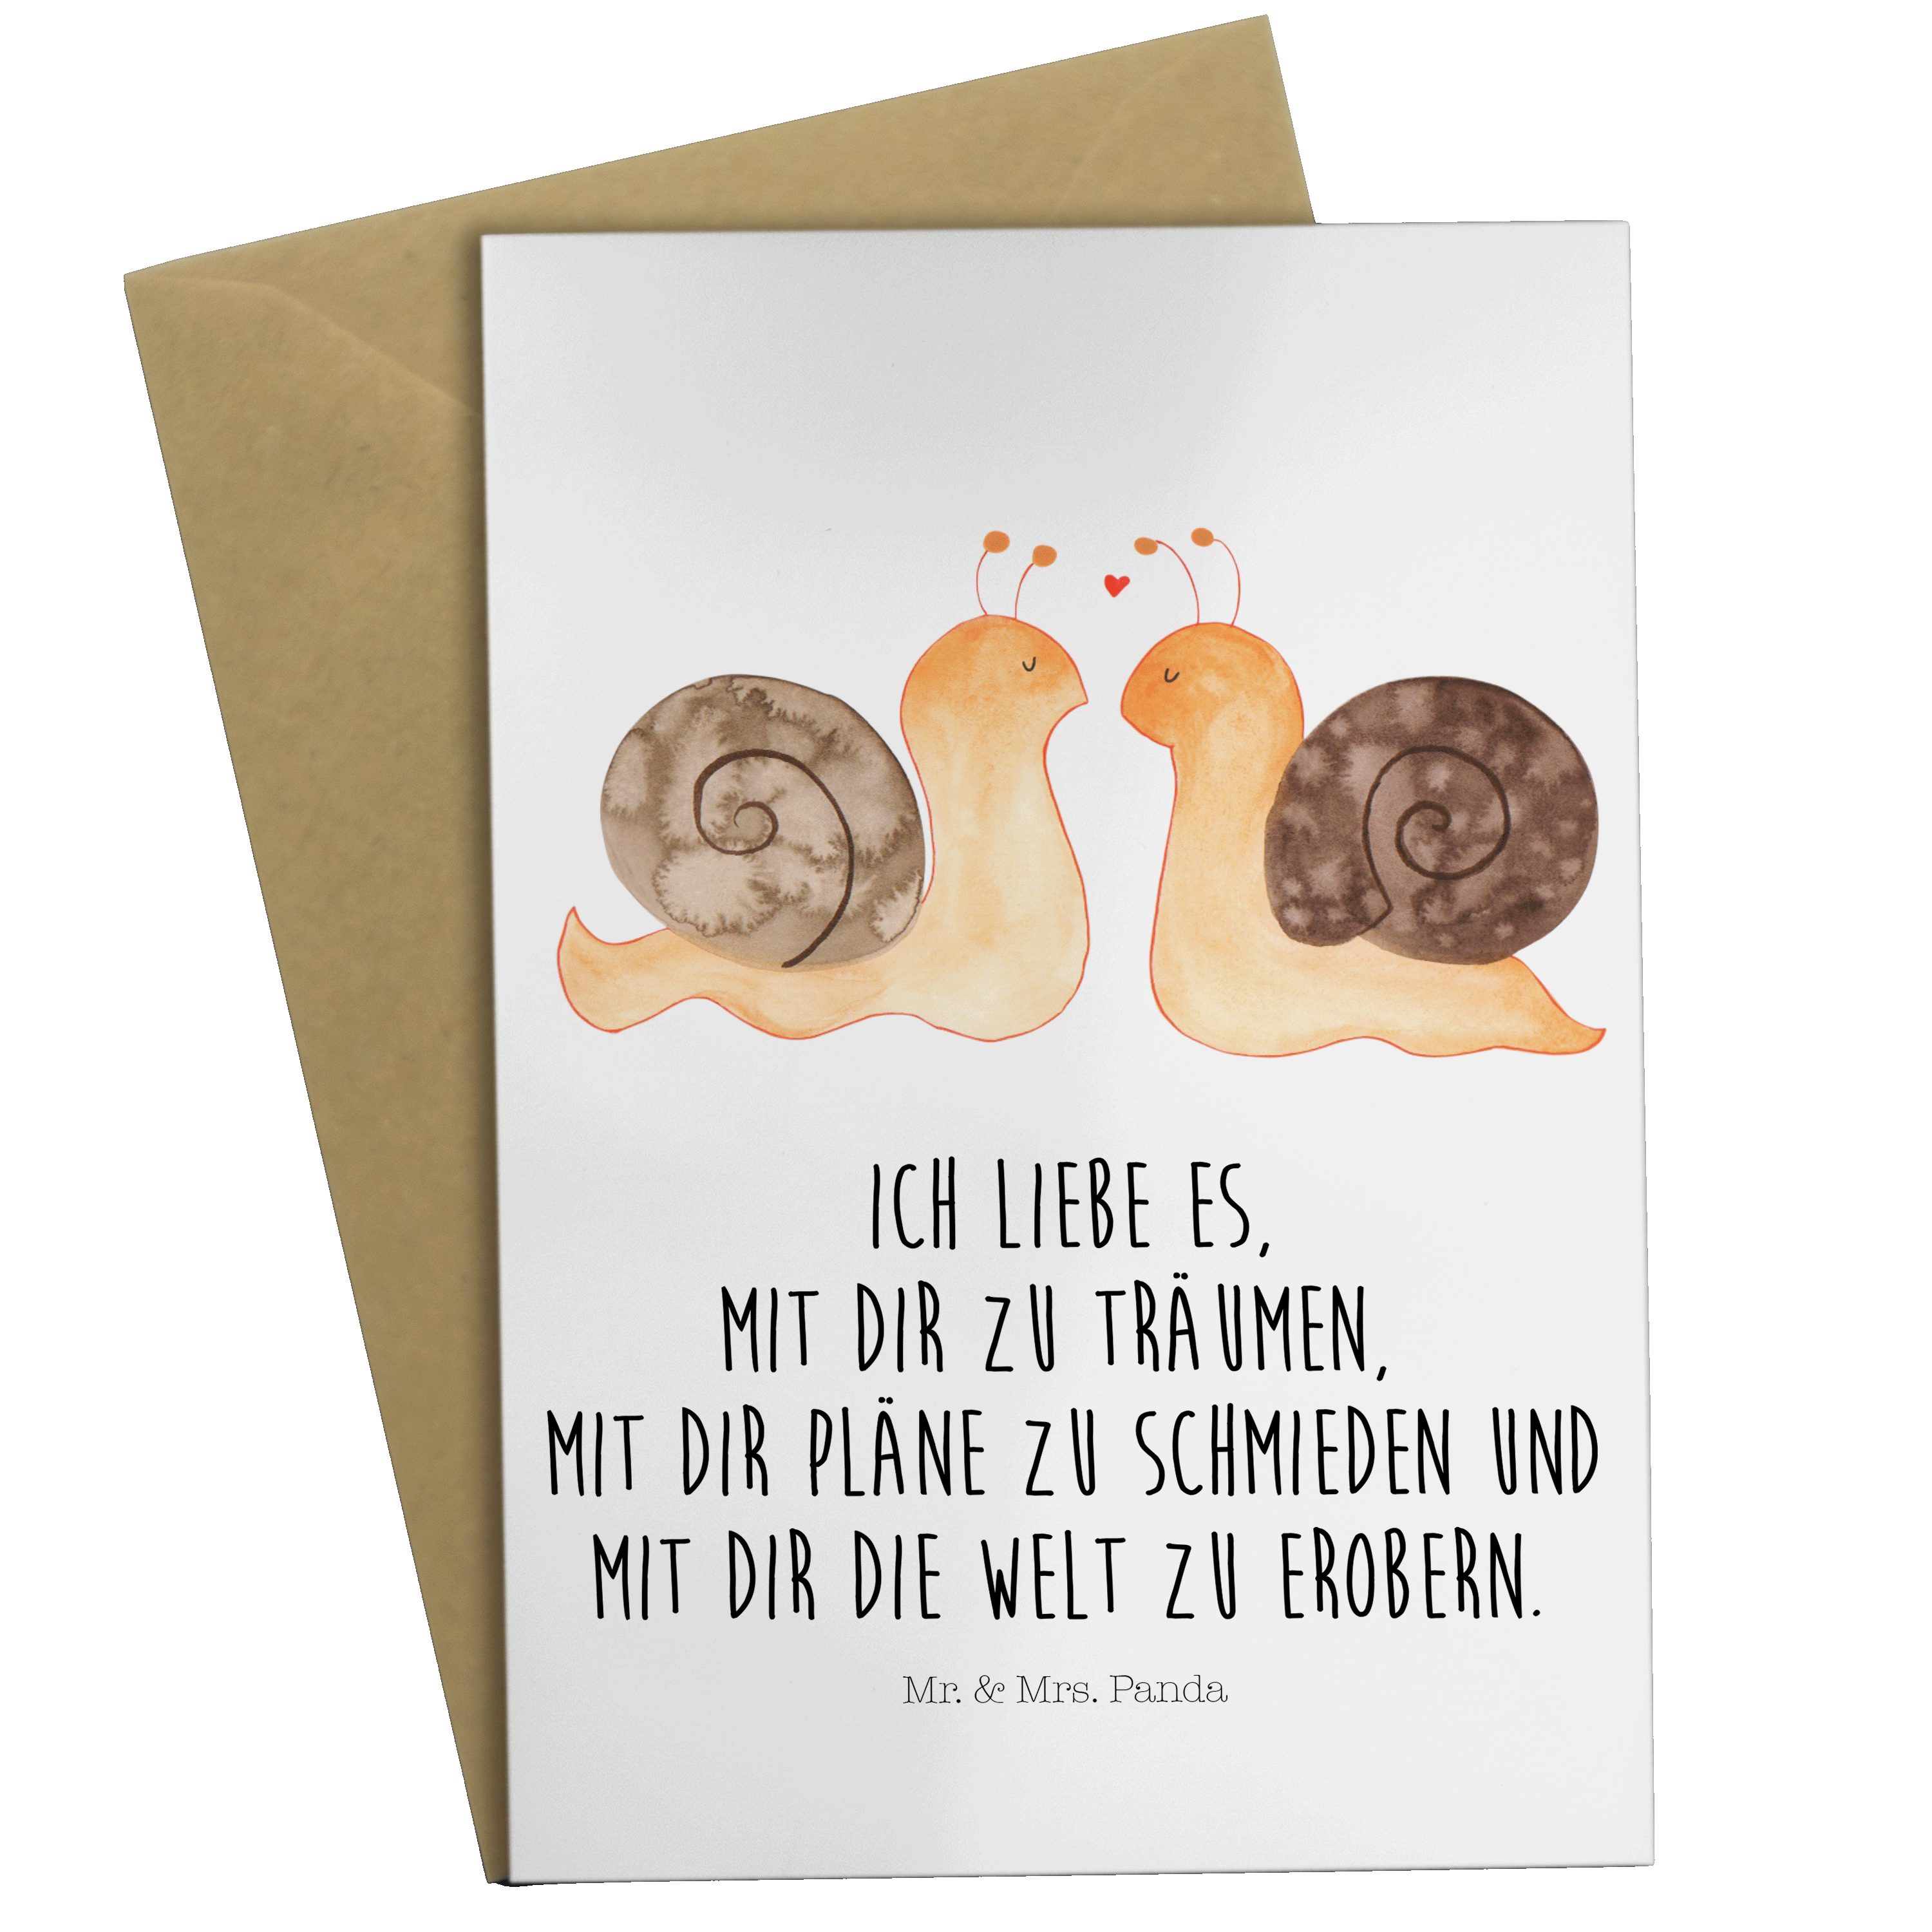 Mr. & Mrs. Panda Grußkarte Schnecken Liebe - Weiß - Geschenk, Verlobung, Hochzeitskarte, zufried